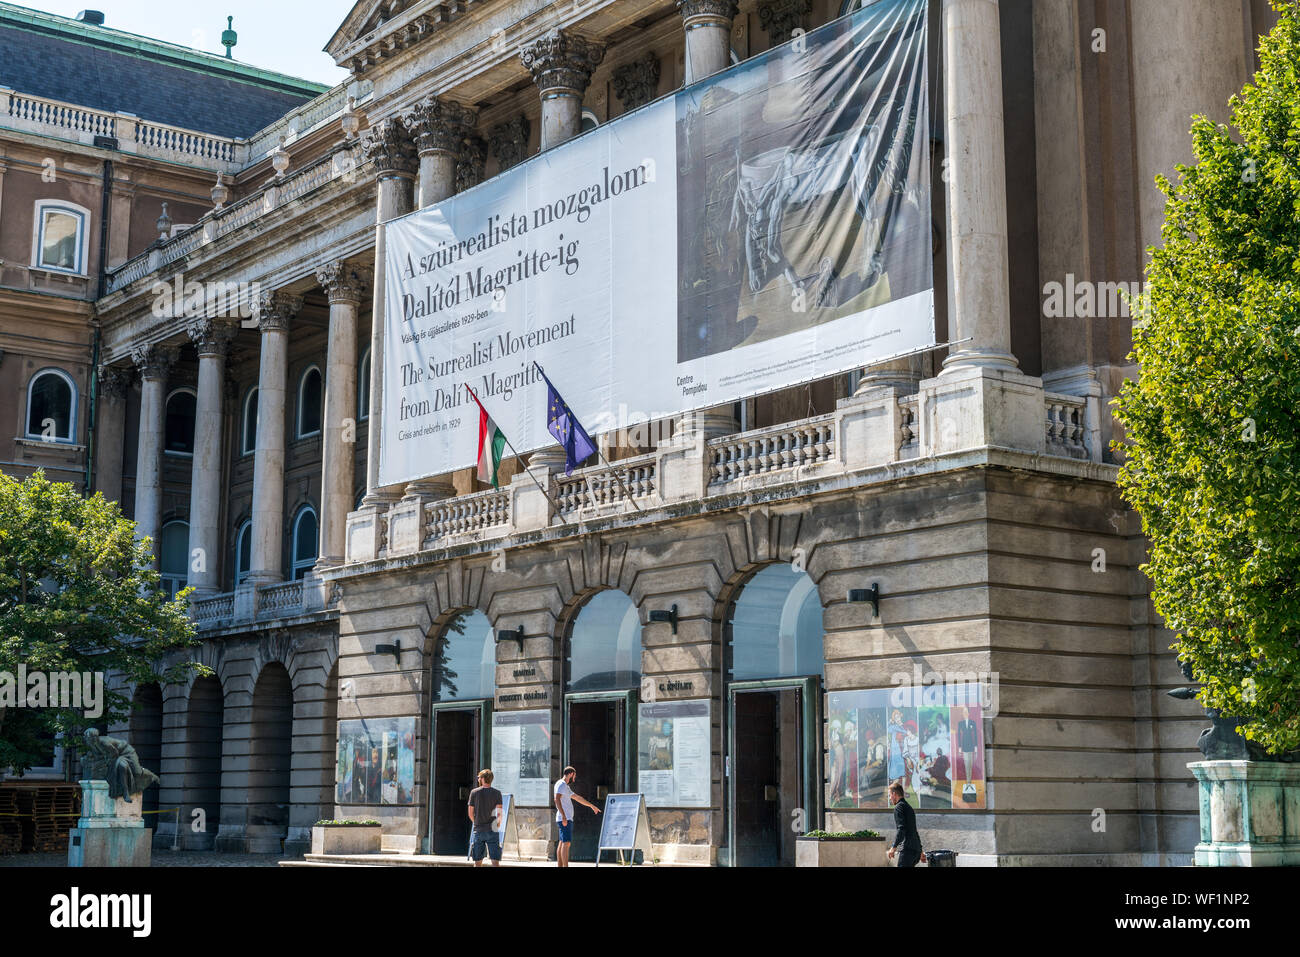 Budapest, Ungheria - 11 agosto 2019: Mostra 'il movimento surrealista Da Magritte a Dali' presso la Galleria Nazionale Ungherese Foto Stock